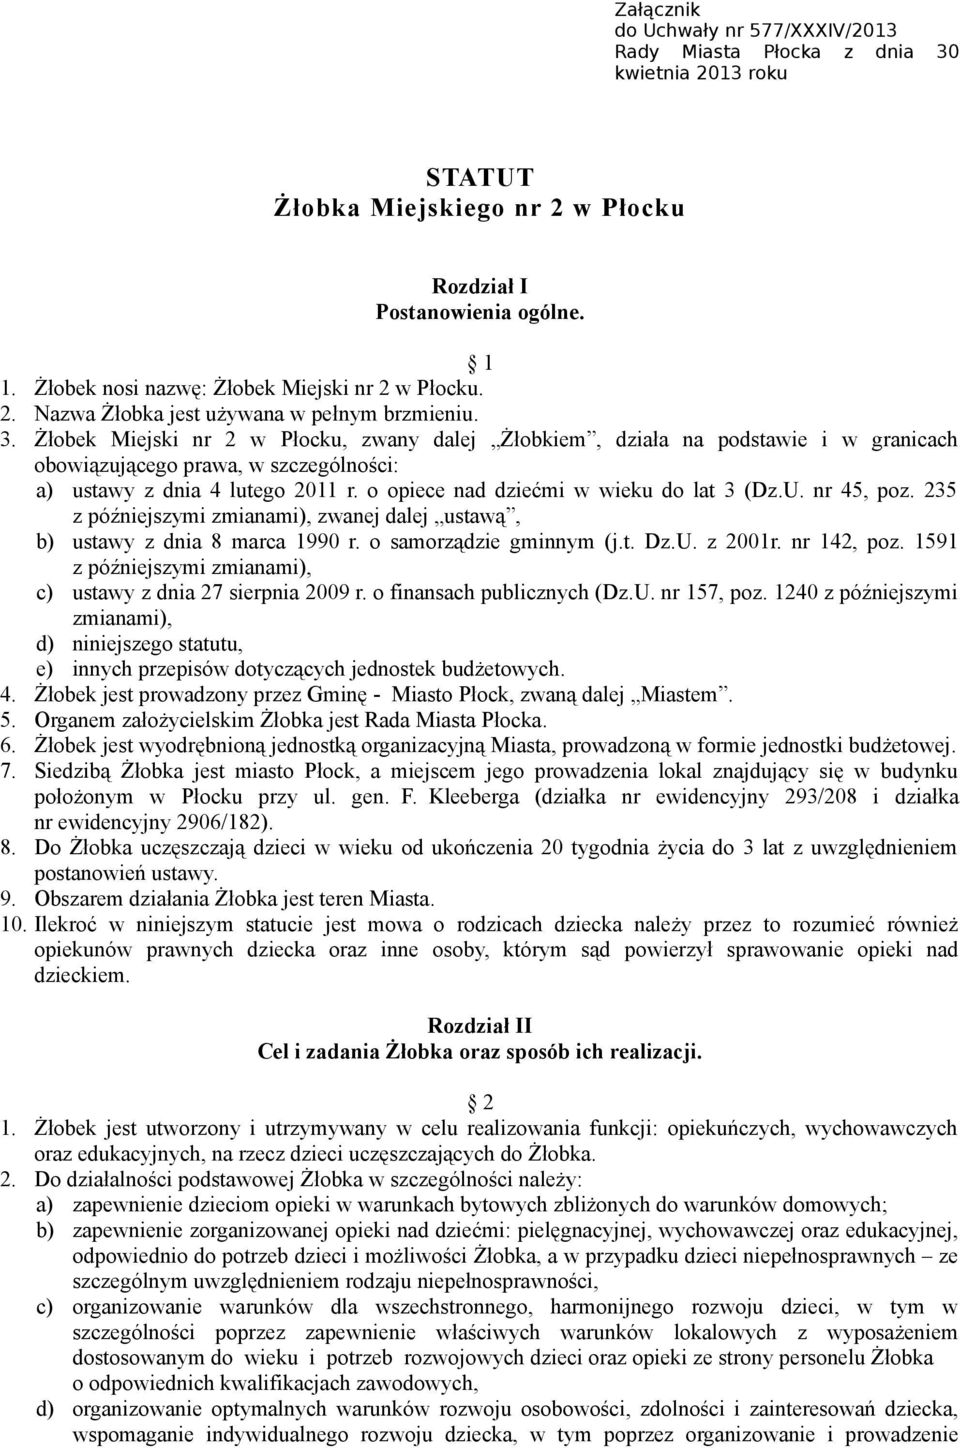 Żłobek Miejski nr 2 w Płocku, zwany dalej Żłobkiem, działa na podstawie i w granicach obowiązującego prawa, w szczególności: a) ustawy z dnia 4 lutego 2011 r.